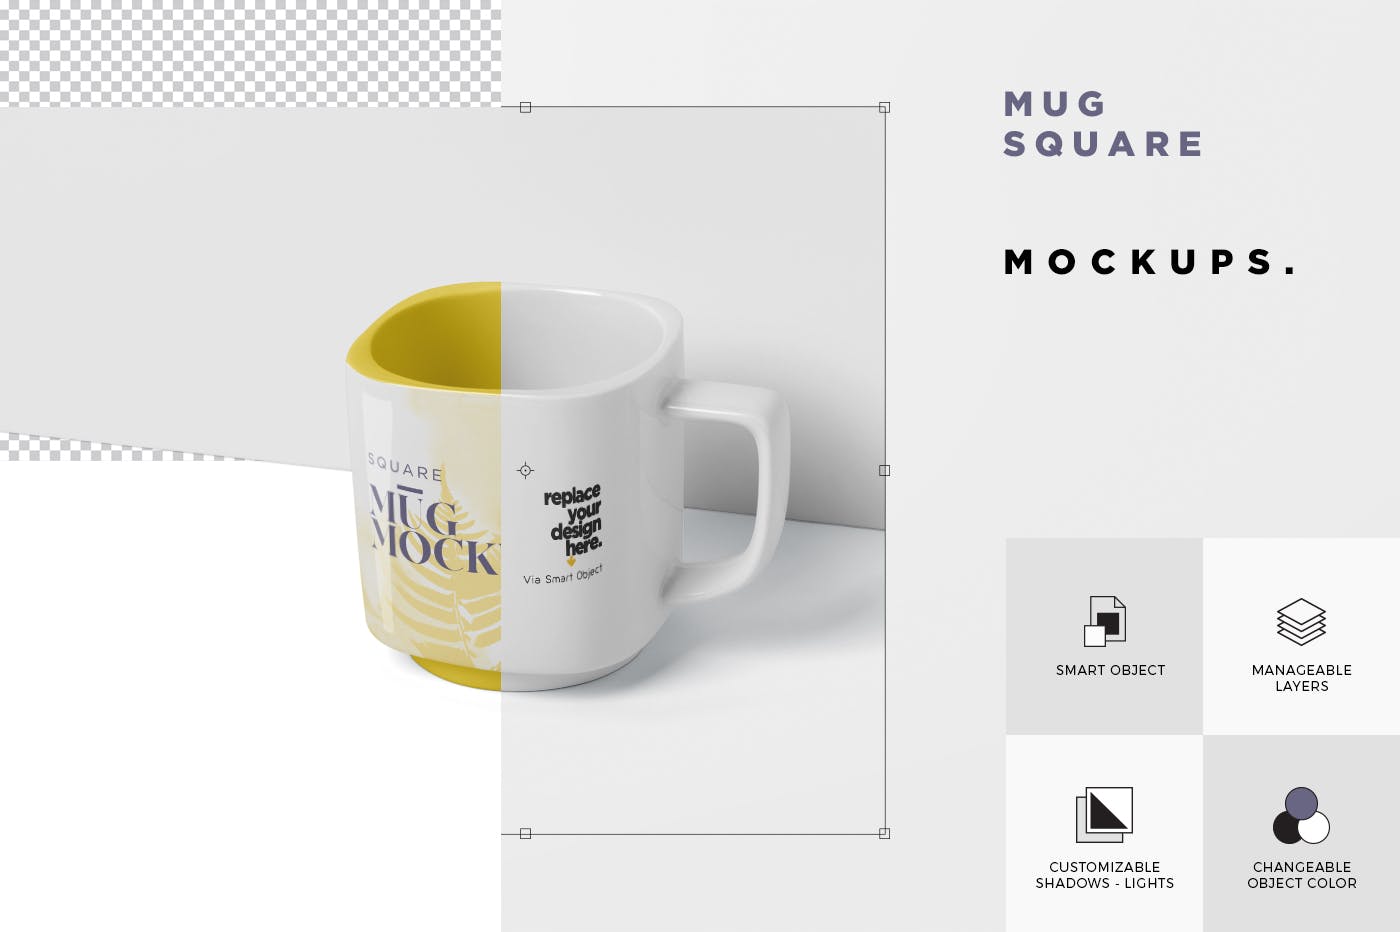 方形马克杯图案设计蚂蚁素材精选模板 Mug Mockup – Square Shaped插图(5)